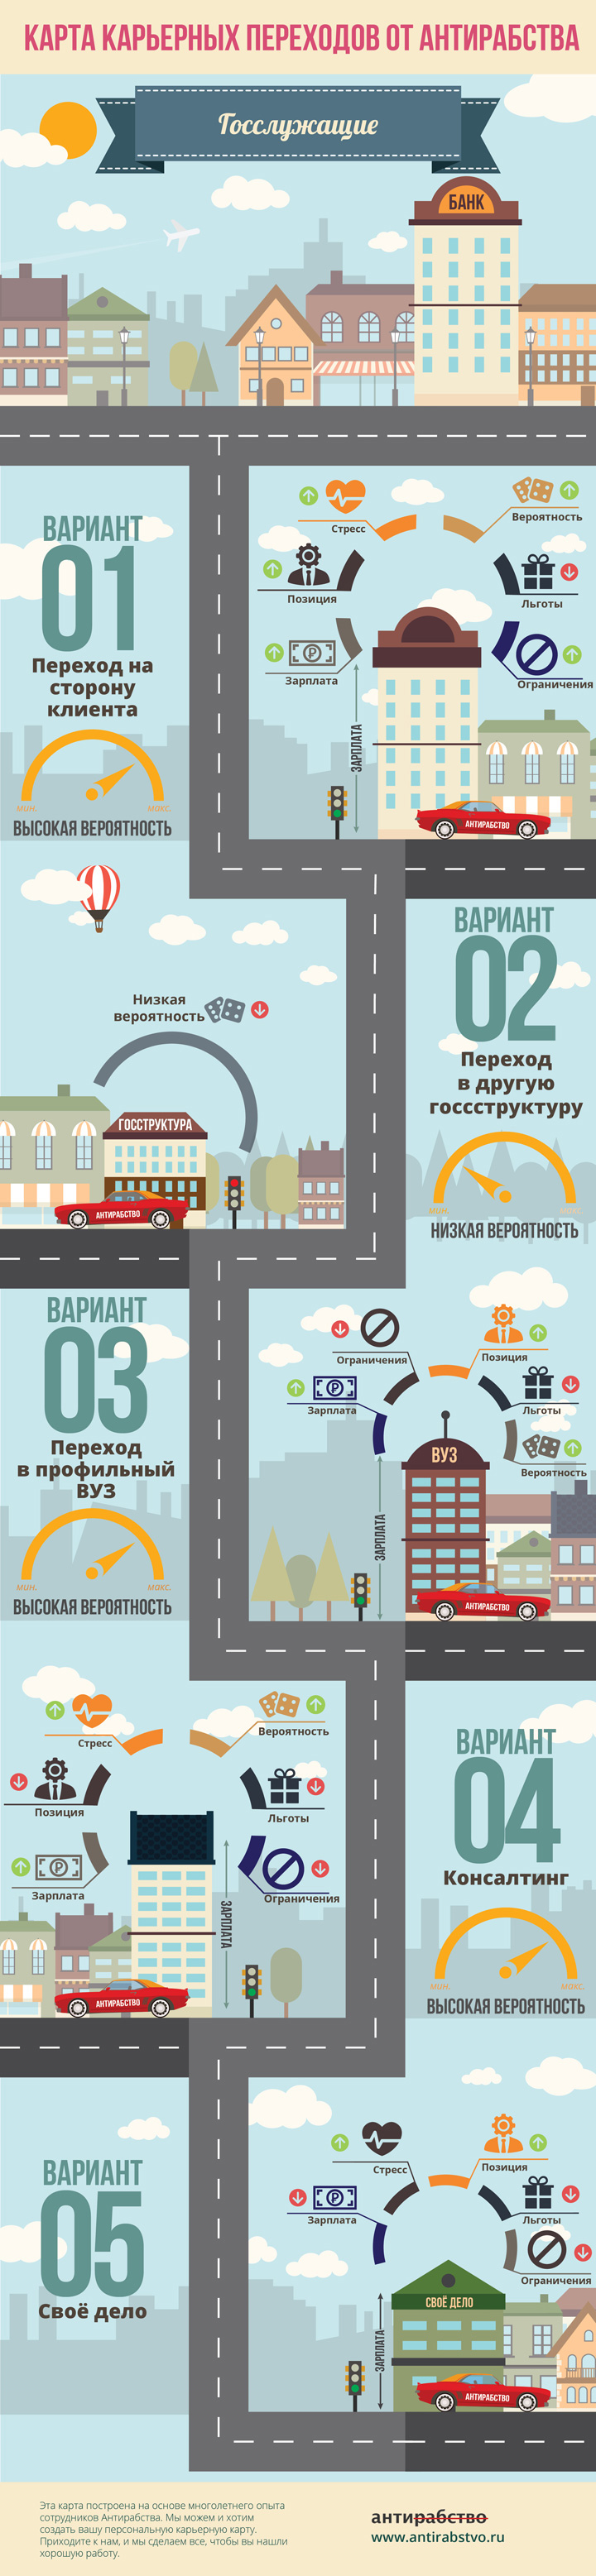 Карта карьерных переходов. Фото: АНТИРАБСТВО